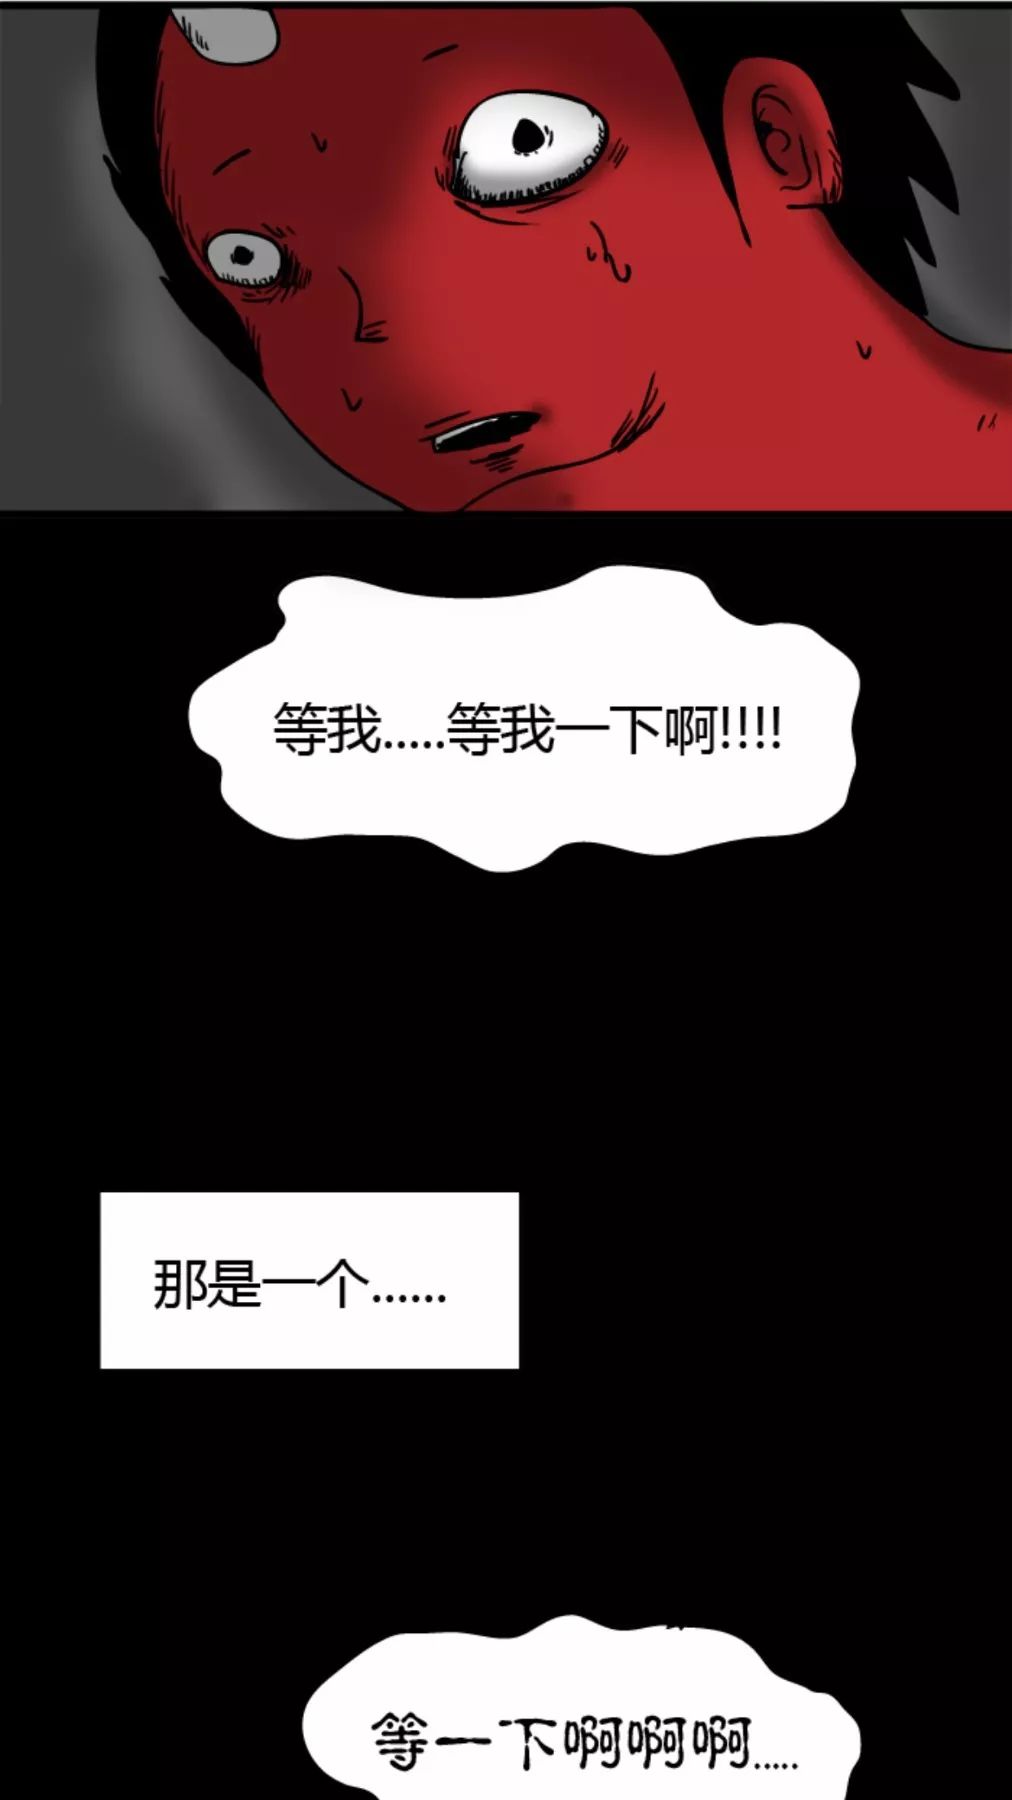 【靈異漫畫】《跑步》染紅帽的小男孩 靈異 第6張